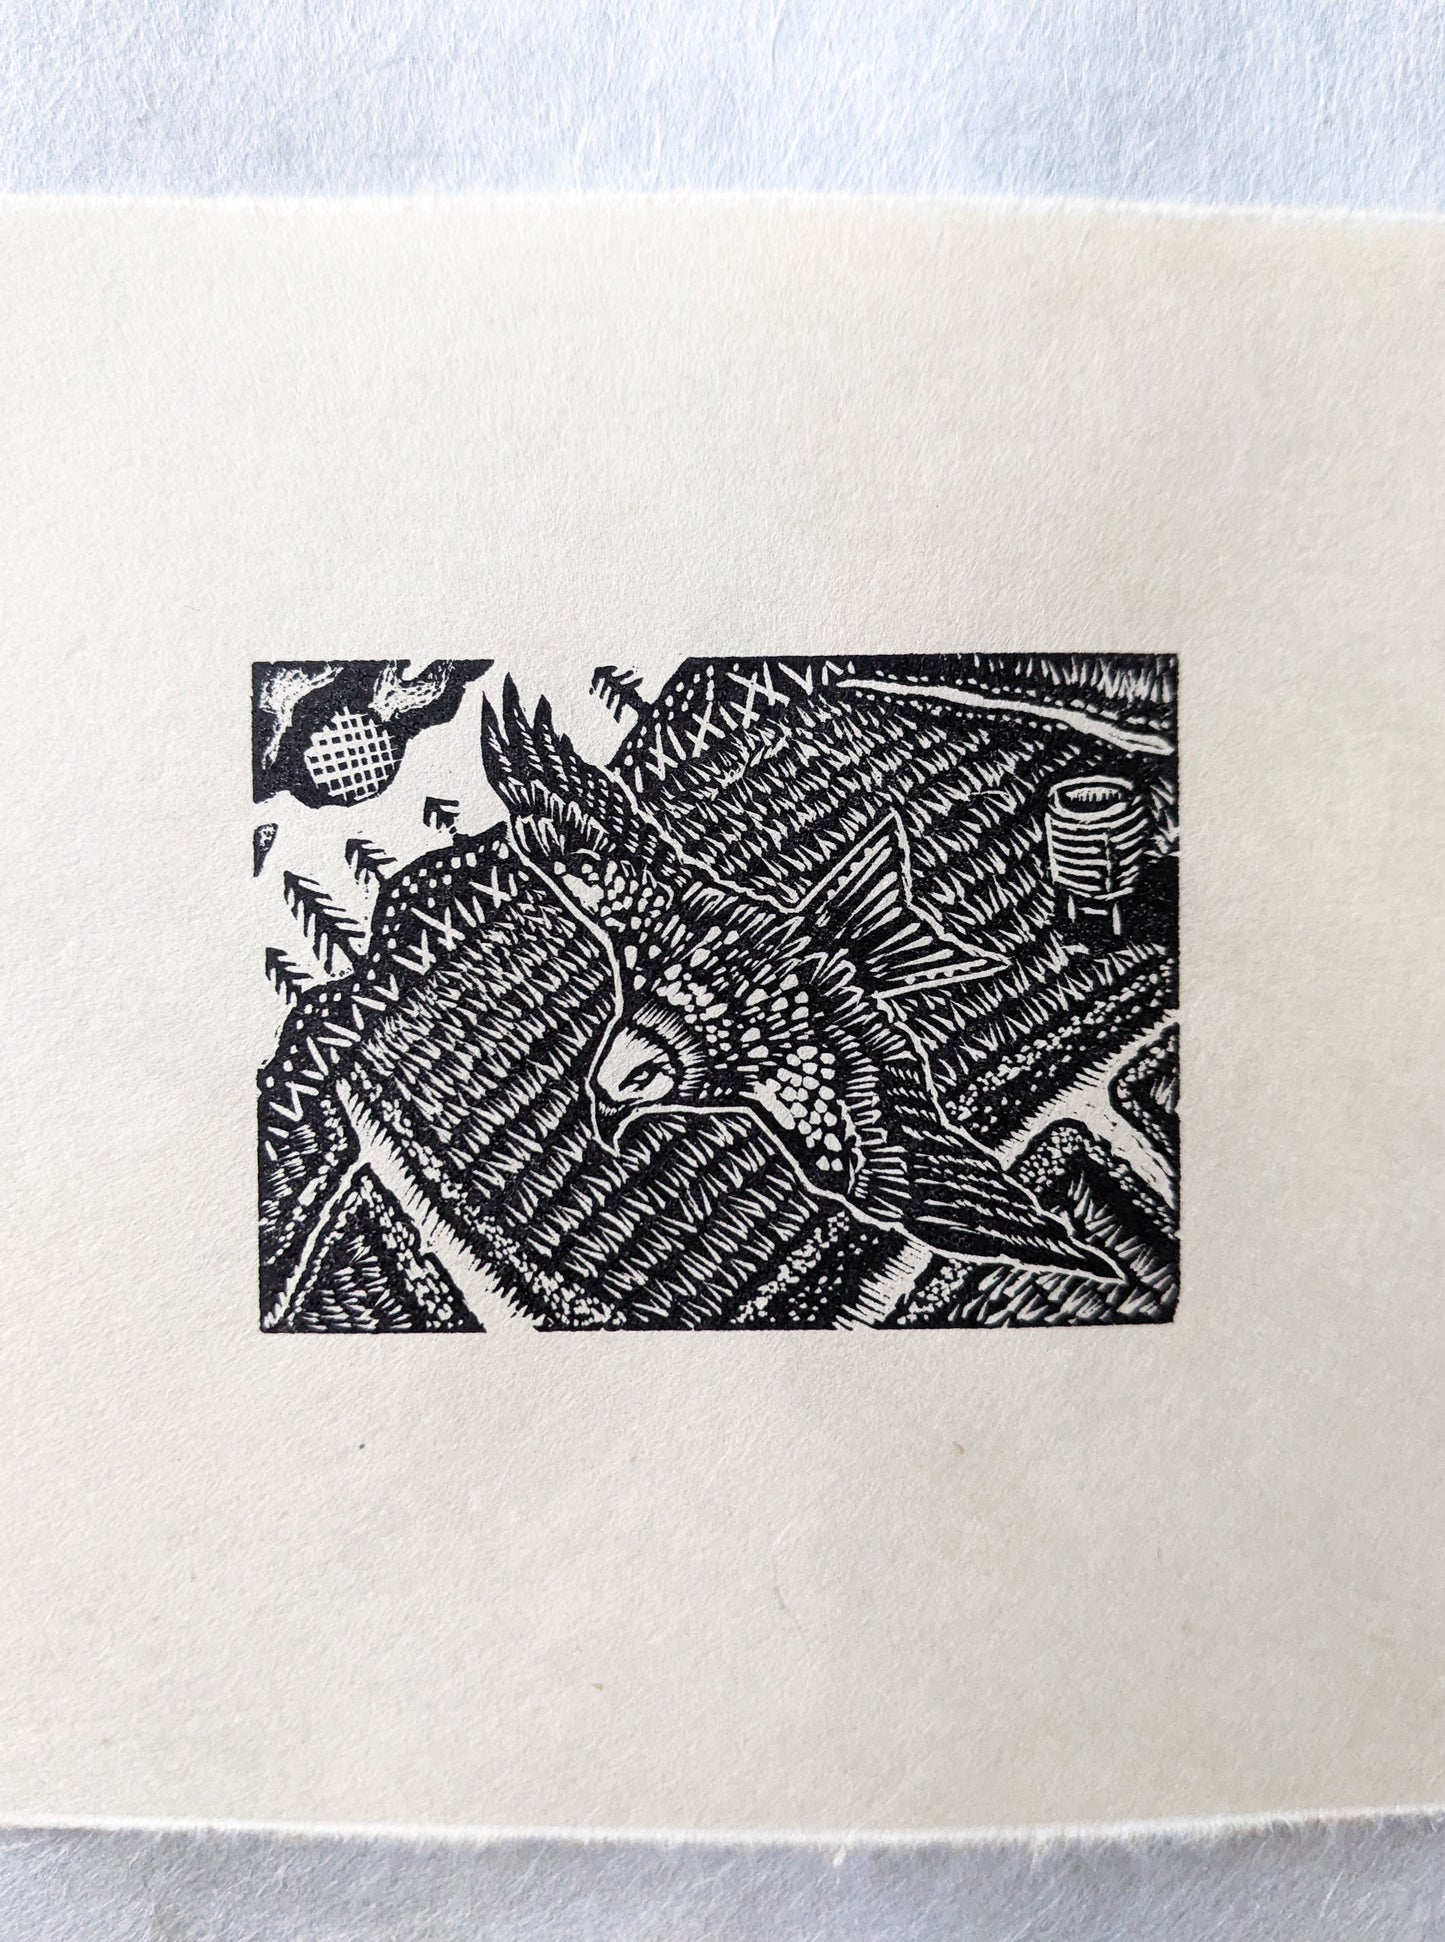 Red Kite - wood engraving